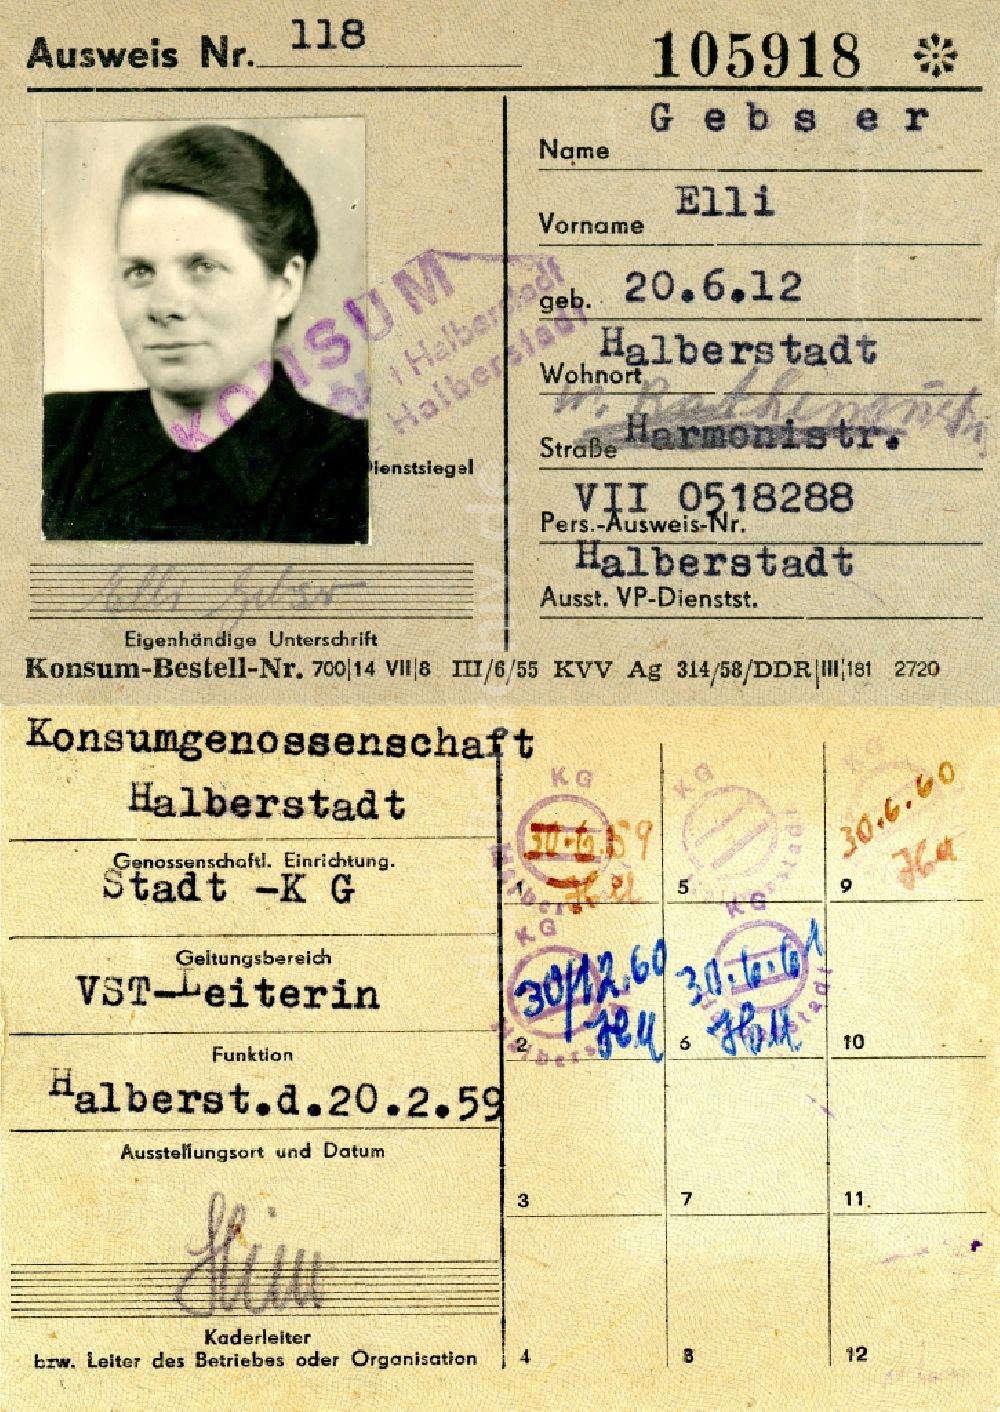 Halberstadt: Mitgliedsausweis der Konsumgenossenschaft ausgestellt in Halberstadt in Sachsen-Anhalt in der DDR